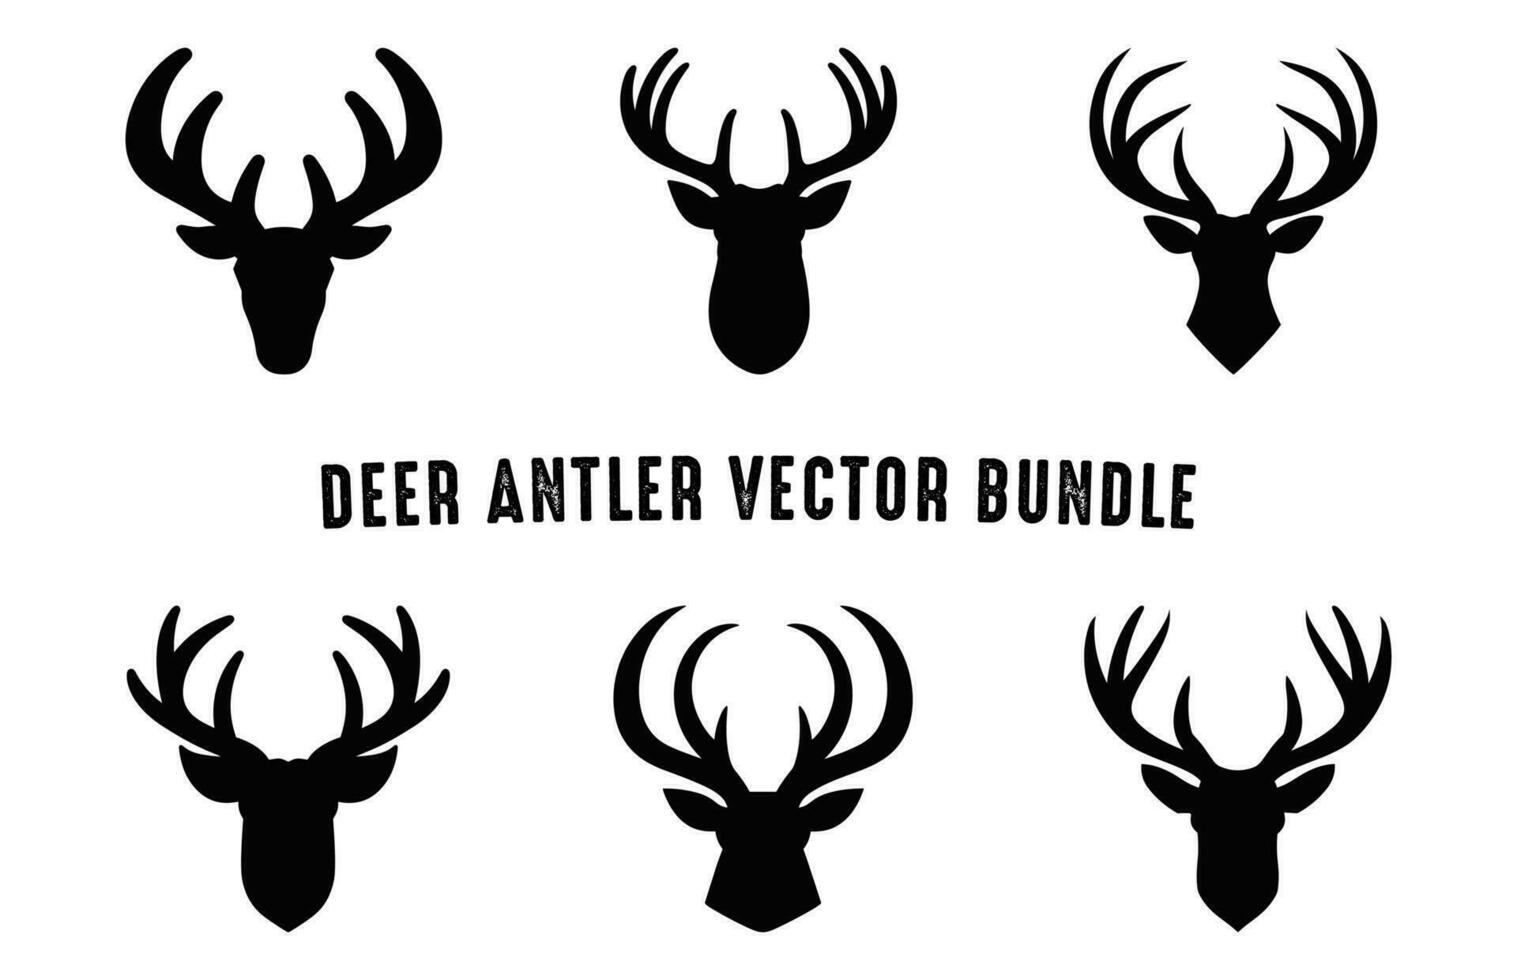 Deer antler silhouettes vector Set, Deer antlers antlers icon bundle